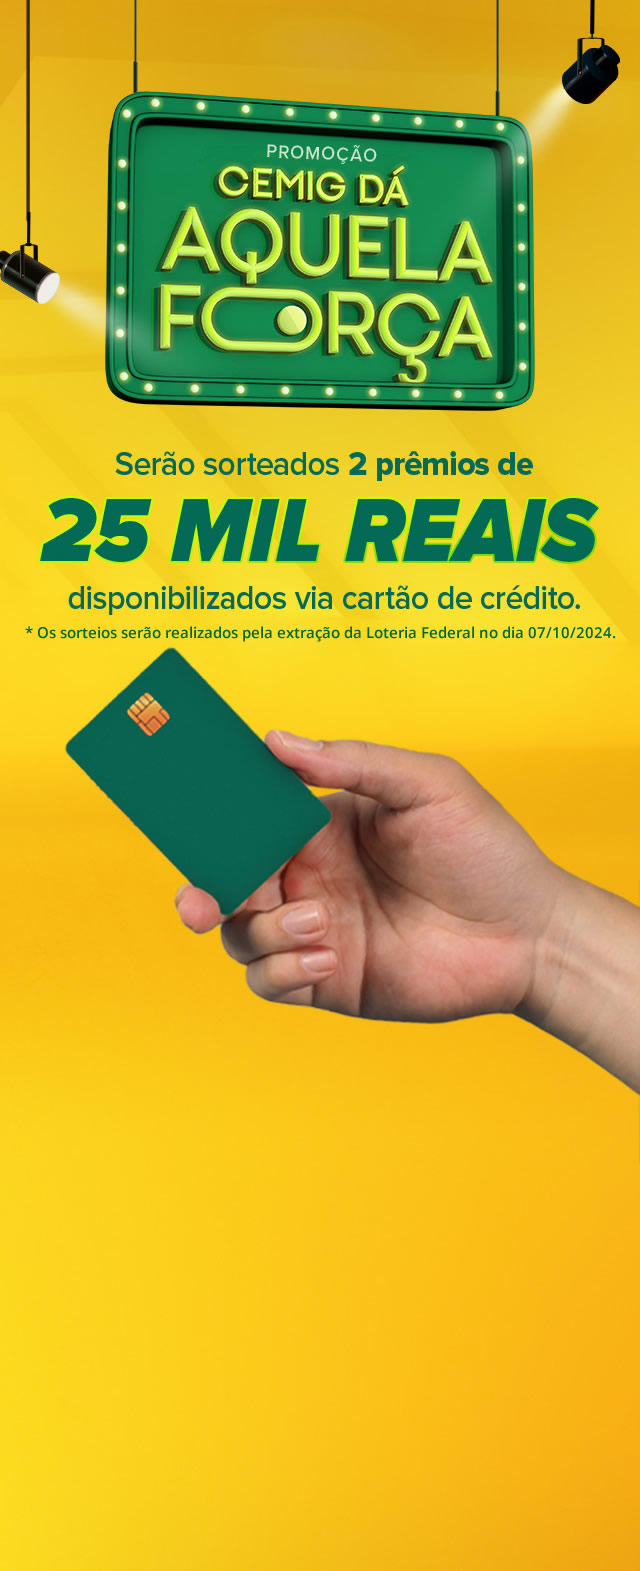 Promoção Cemig dá aquela força - Serão sorteados 2 prêmios de 25 mil reais disponibilizados via cartão de crédito.